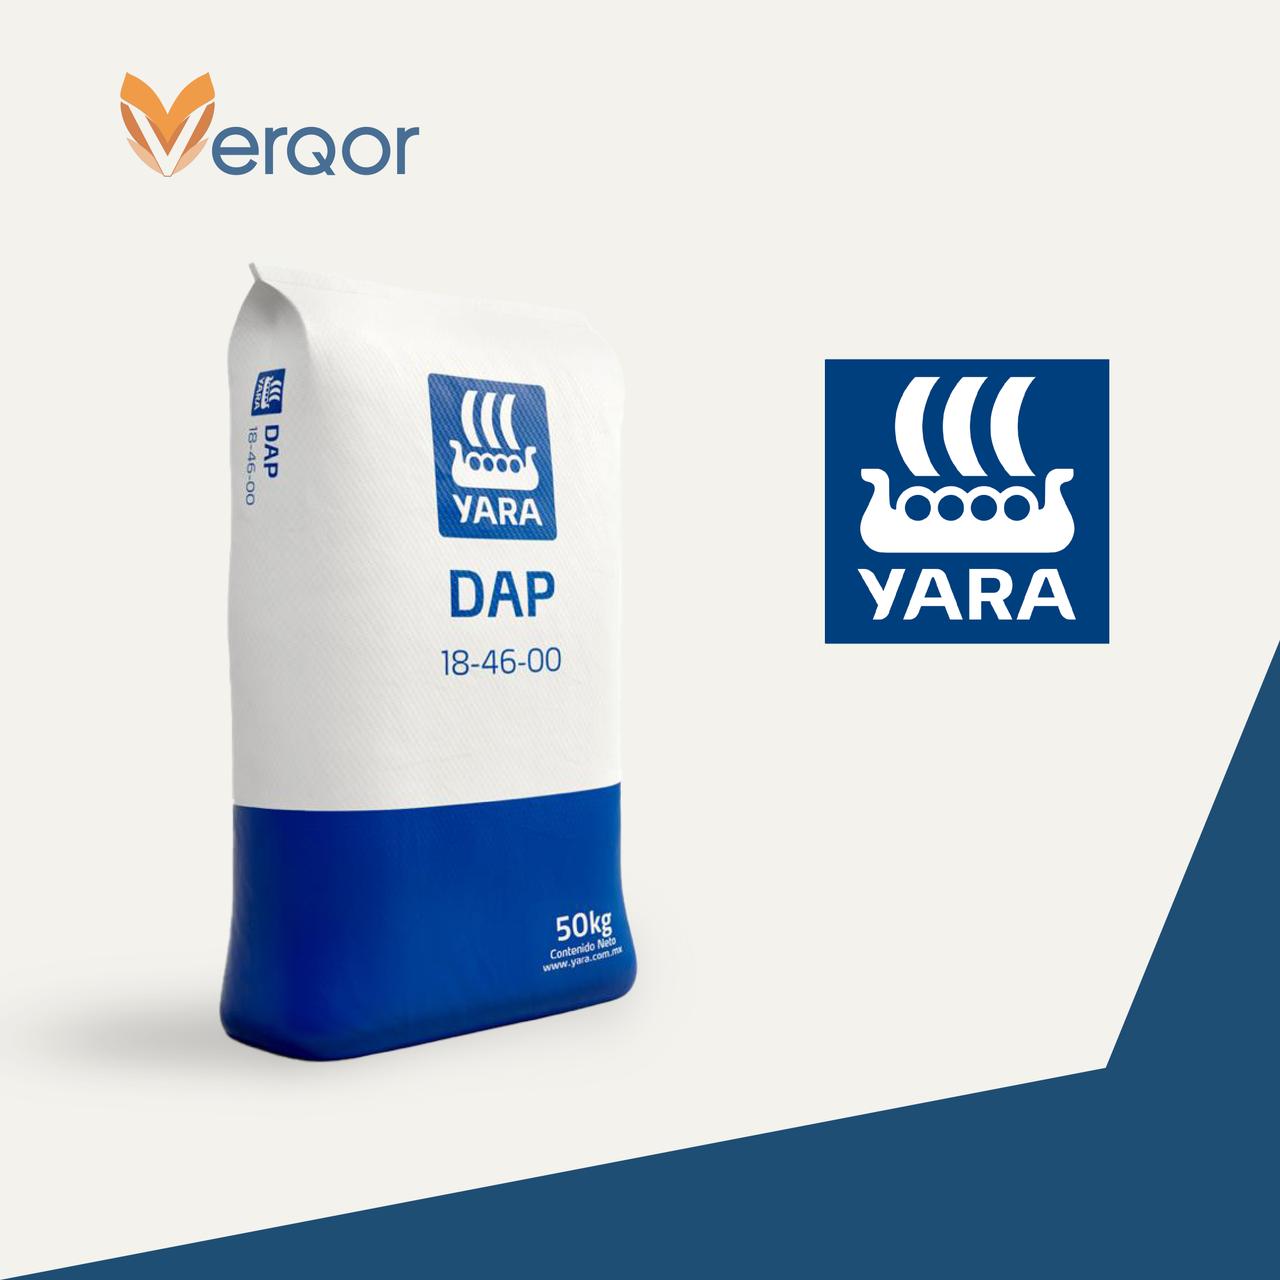 DAP(18-46-00) de Yara